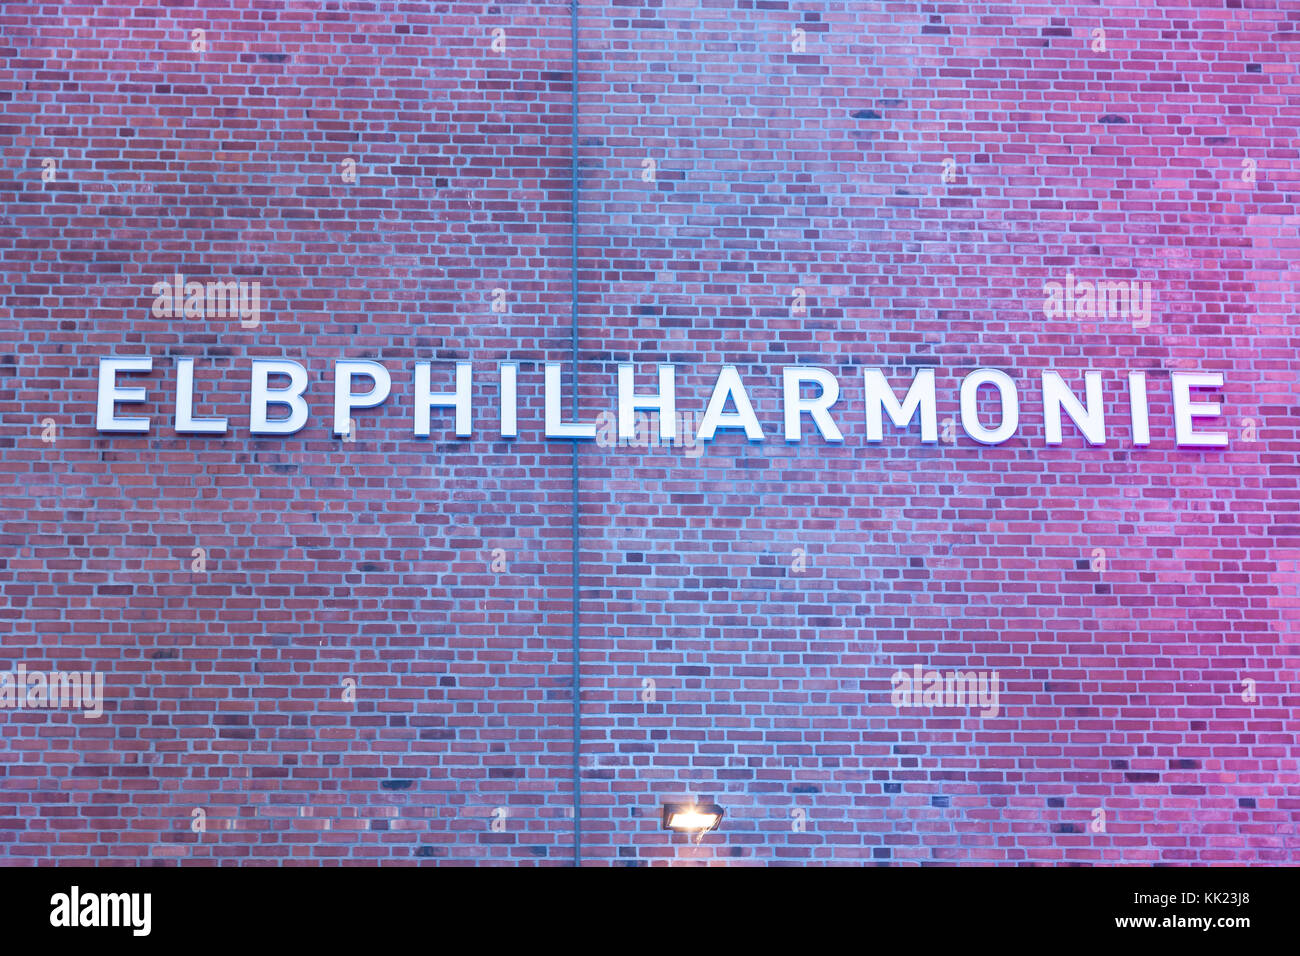 Elbphilharmonie in Hamburg Stock Photo